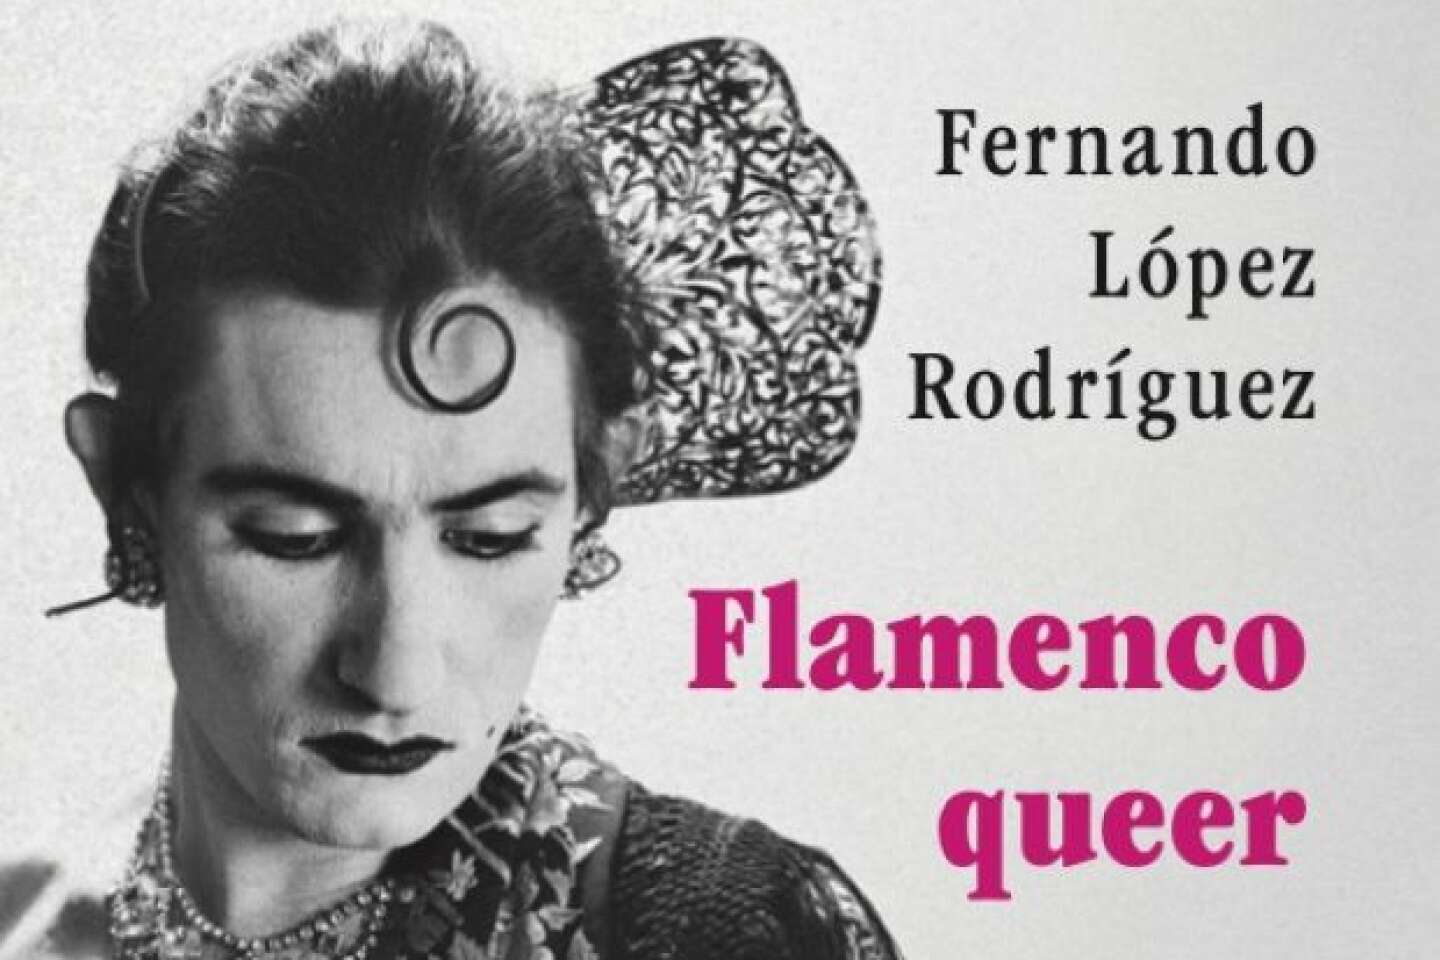 Regarder la vidéo « Flamenco queer » : les multiples transgressions d’un art musical et chorégraphique